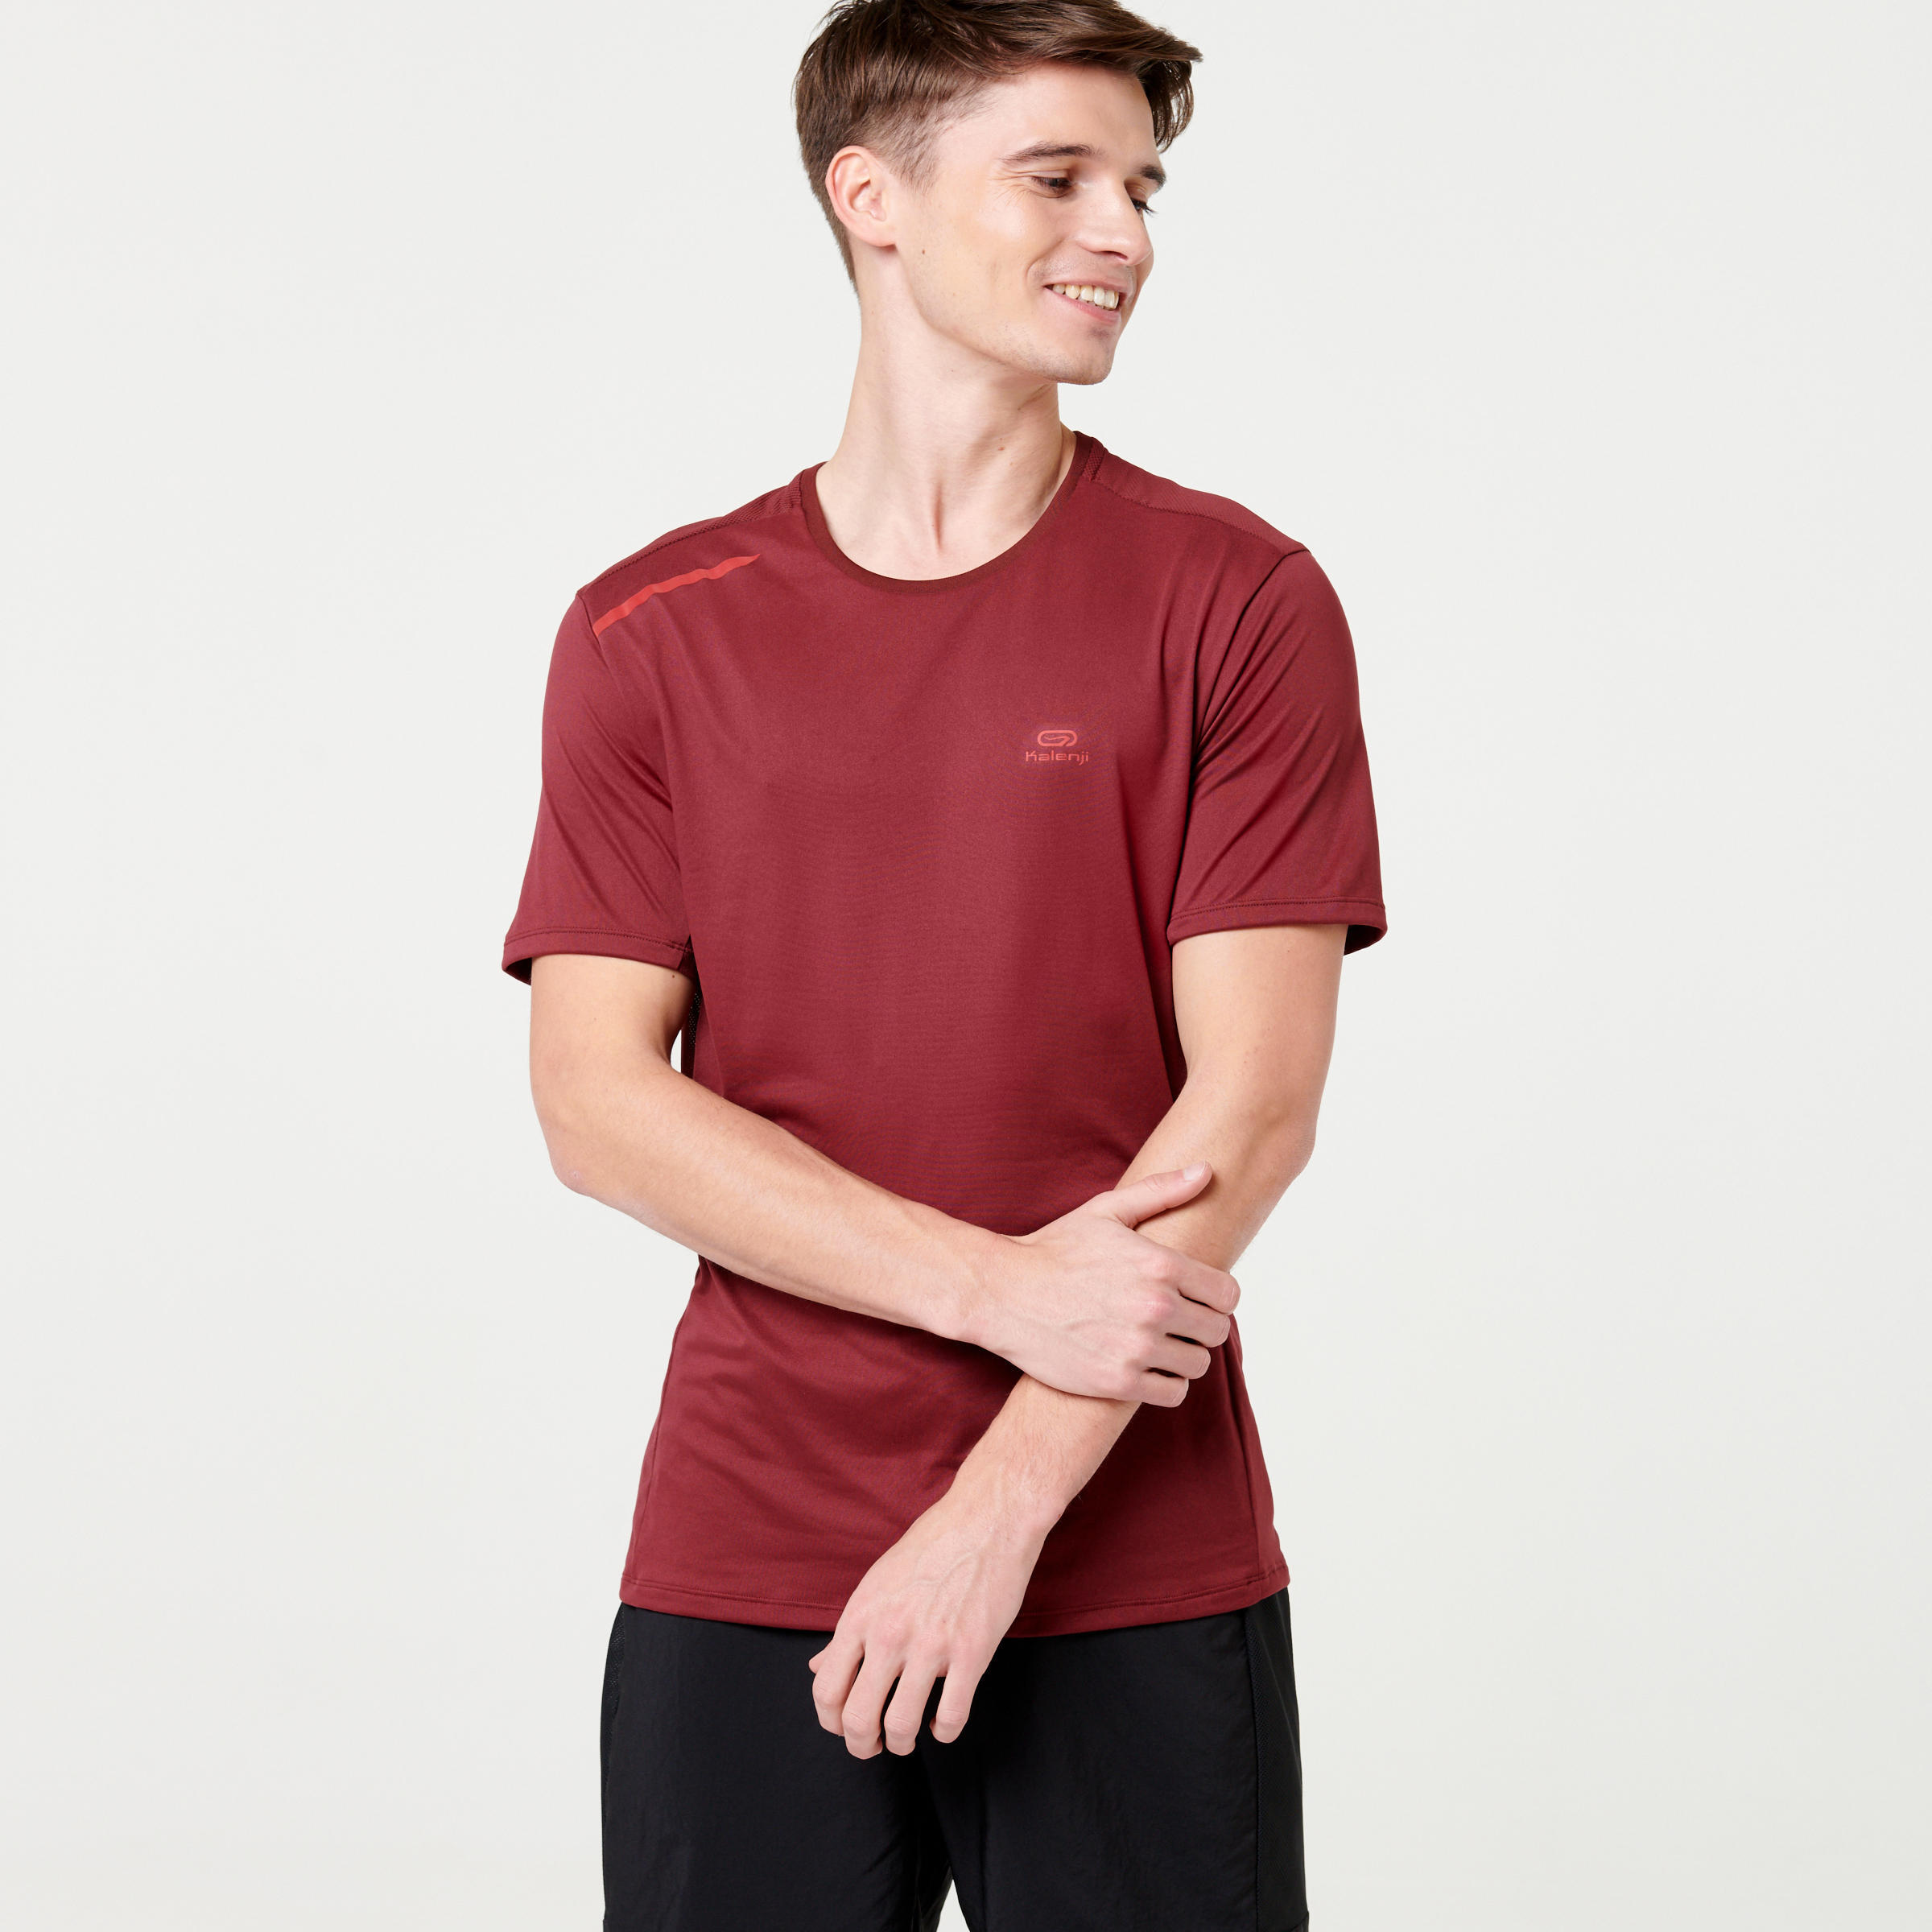 KIPRUN Dry+ Men's Breathable Running T-Shirt - Burgundy Red